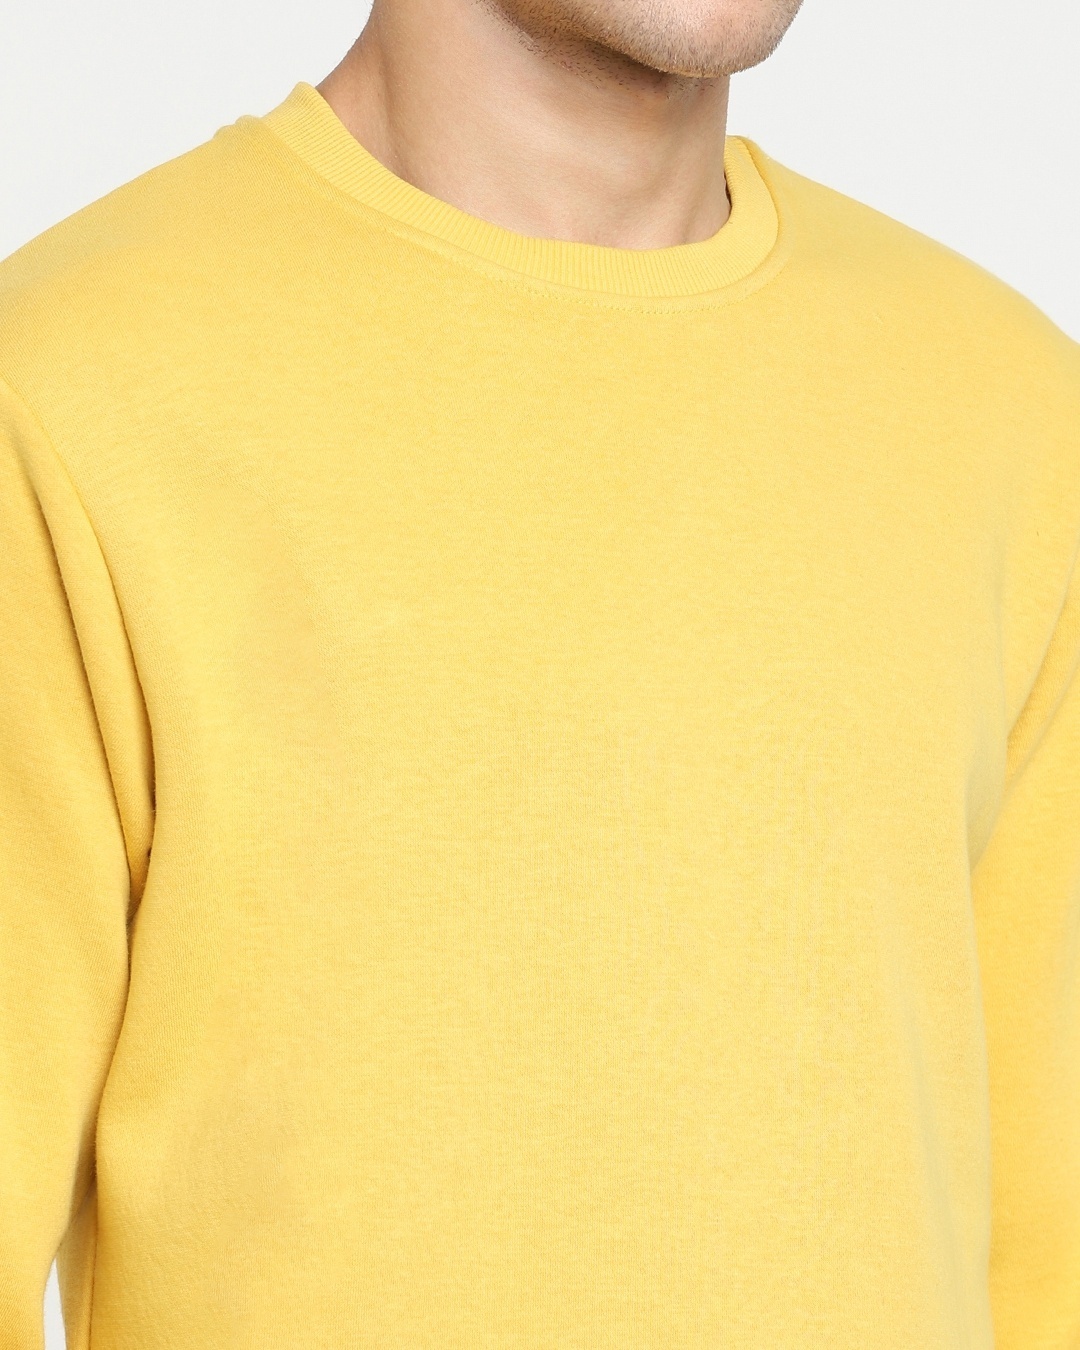 Shop Men's Yellow Fleece Sweatshirt